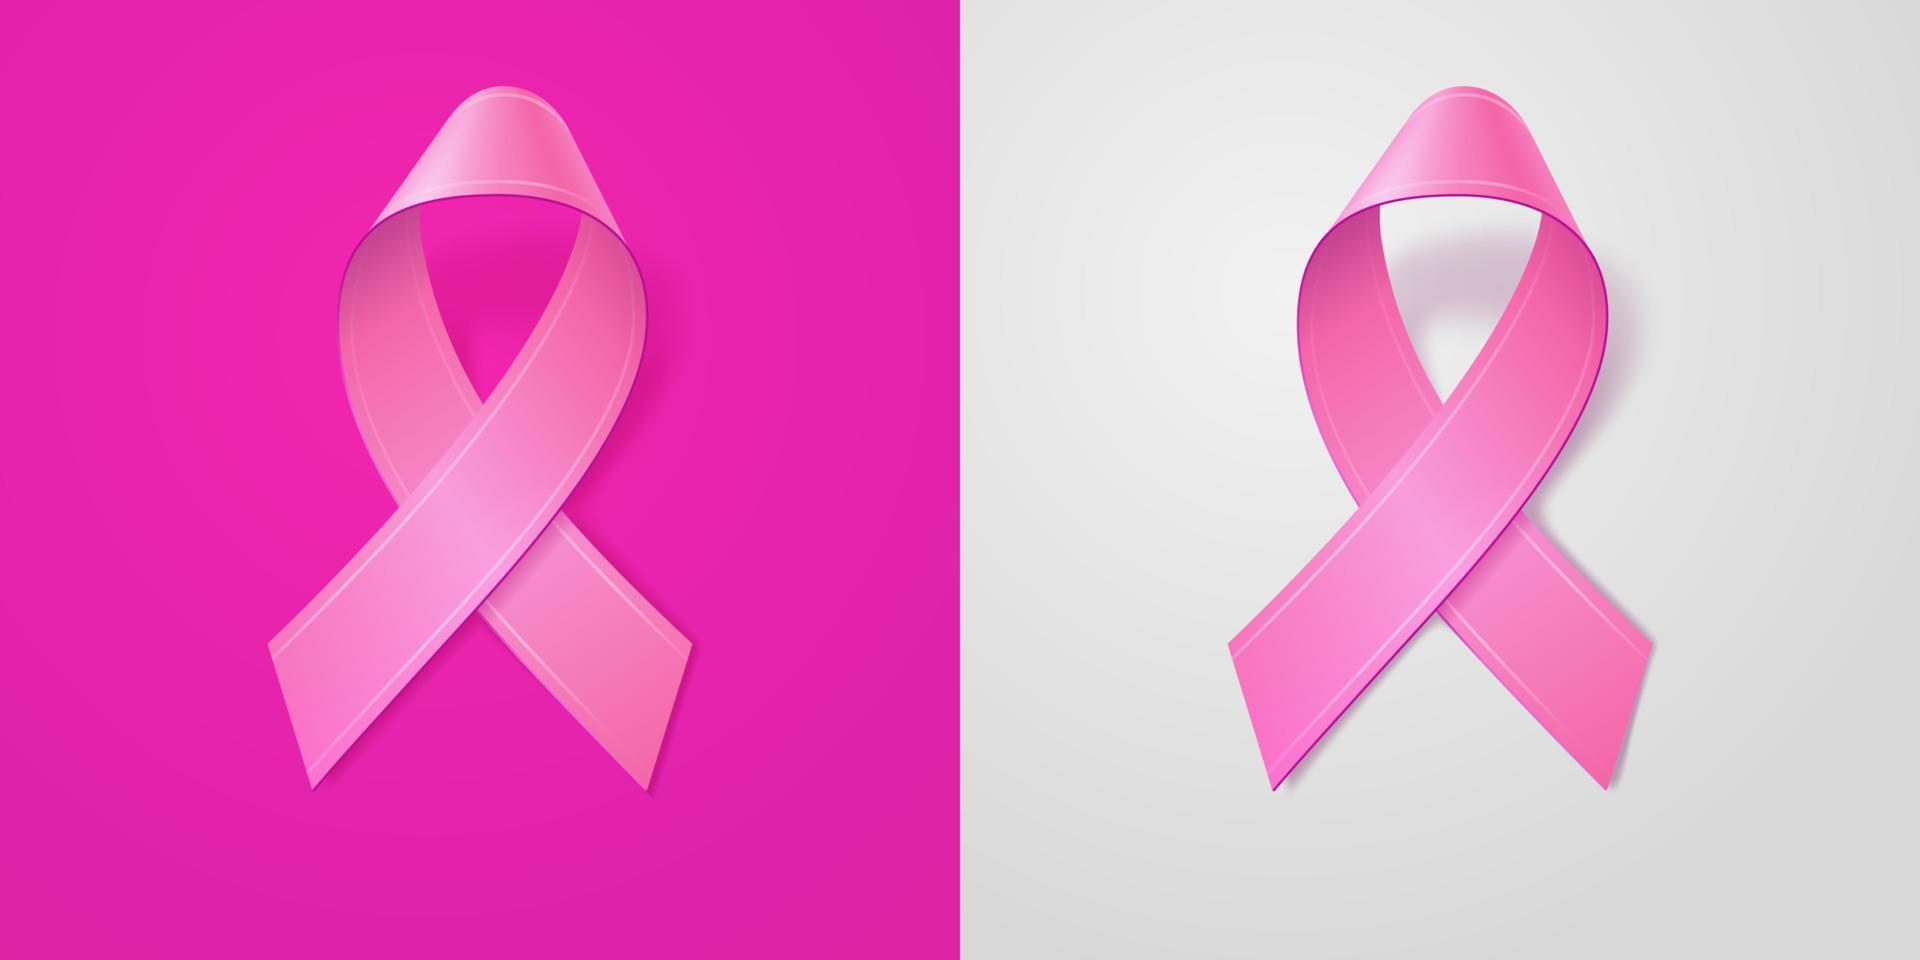 nastro rosa realistico su sfondo rosa chiaro e grigio. simbolo di consapevolezza del cancro al seno in ottobre. modello per banner, poster, inviti, volantini. illustrazione vettoriale. vettore